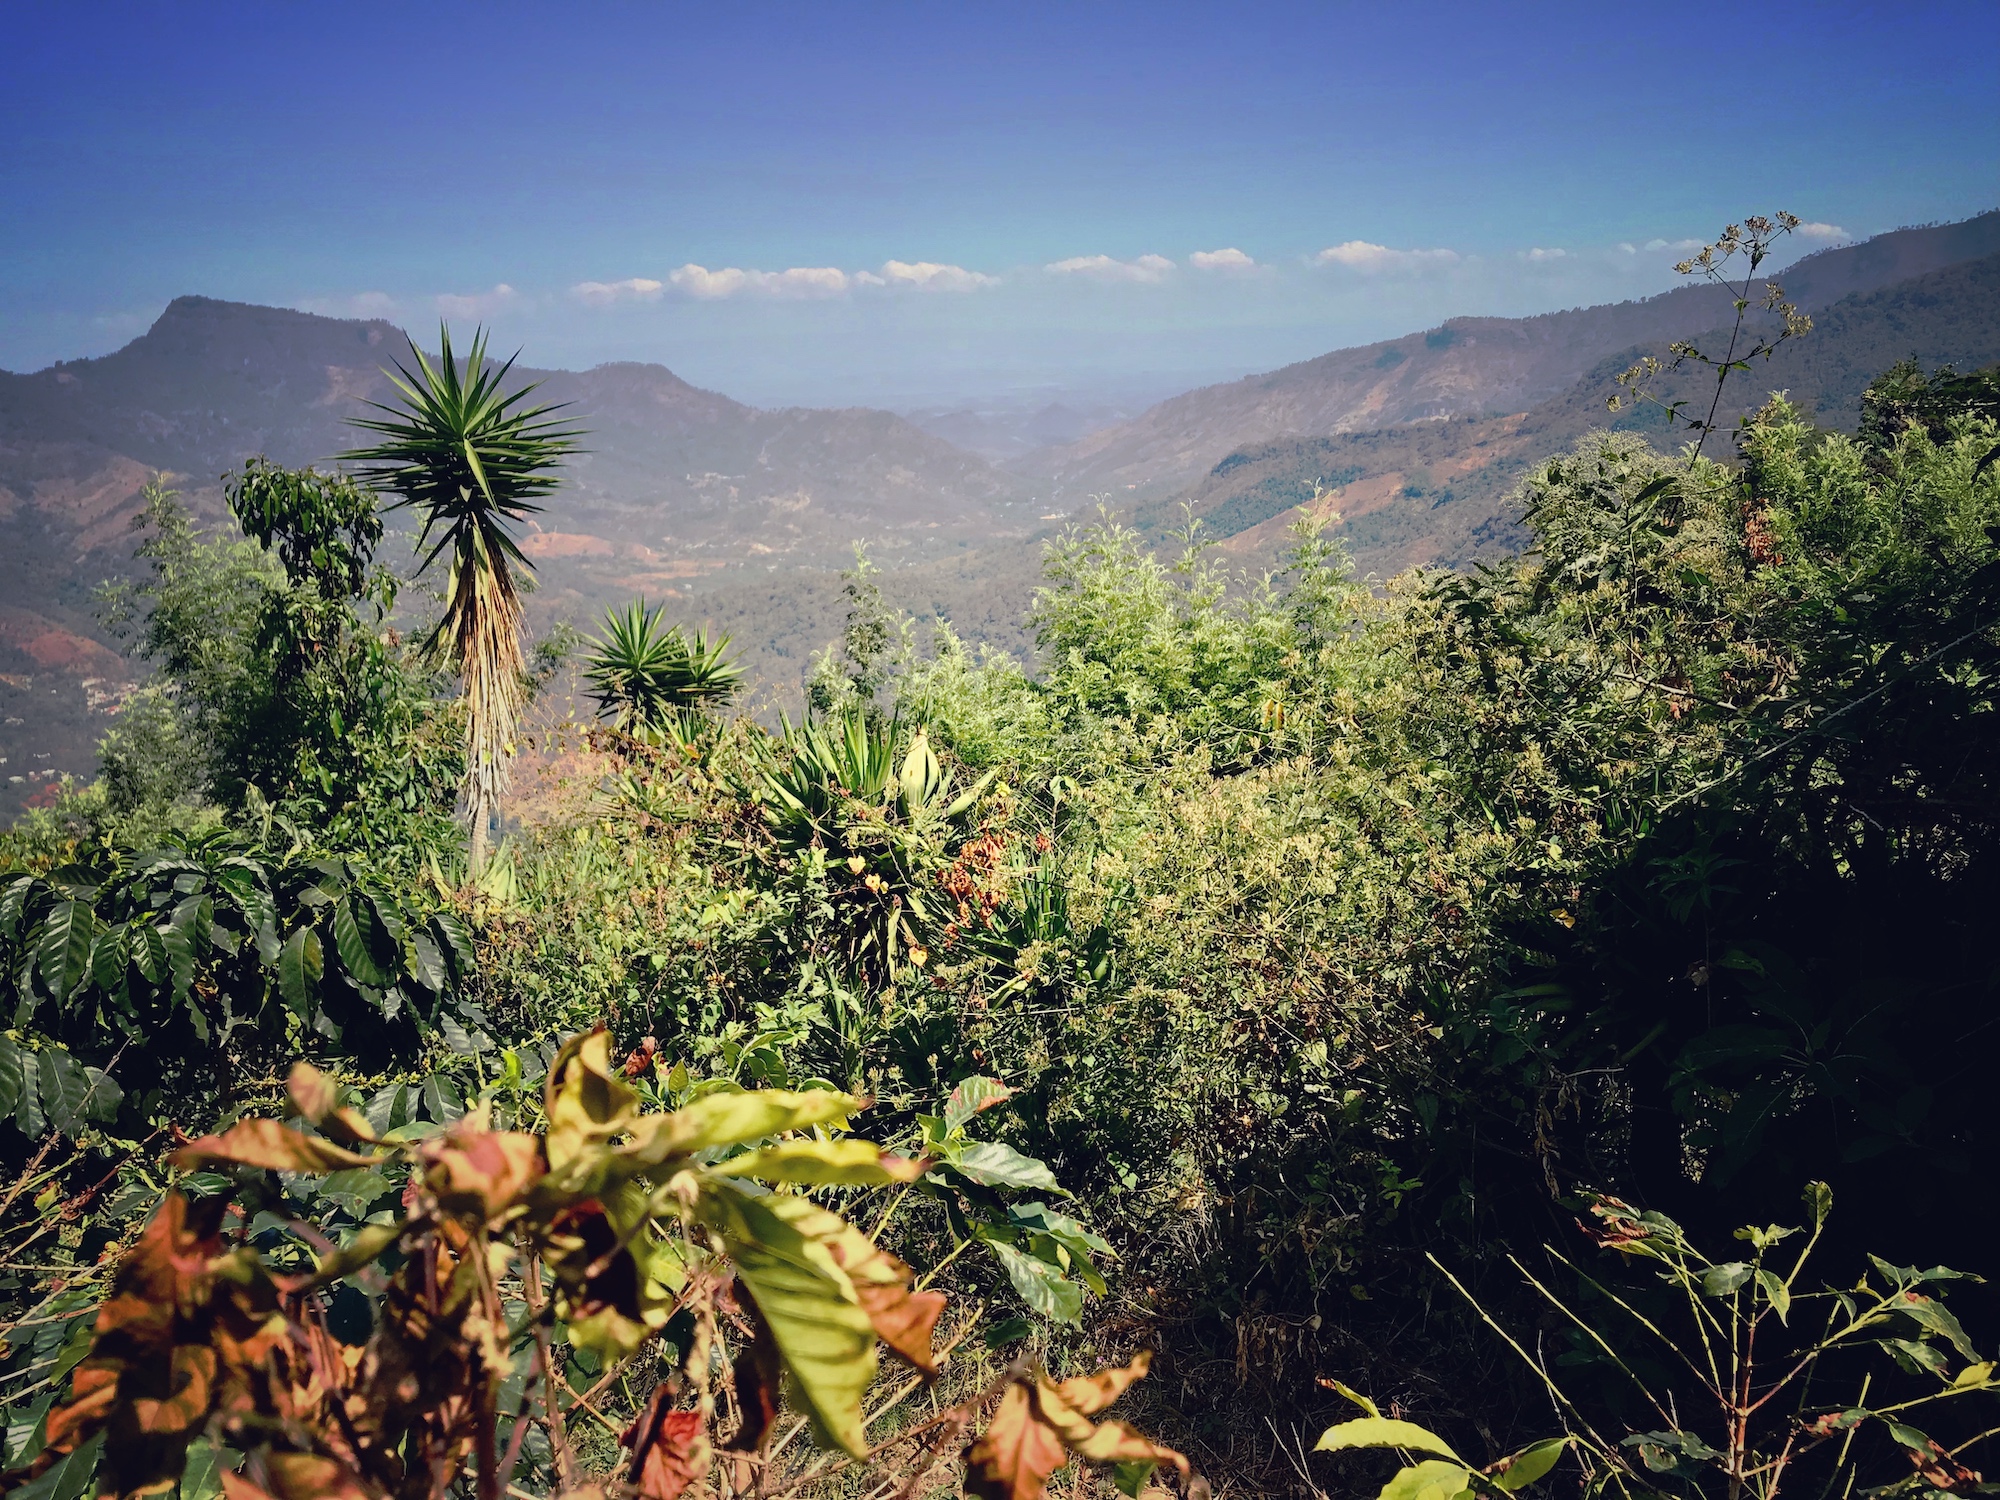 Kaffeeplantage im Agroforst Mischsystem in Huehuetenango. Man sieht über verschiedene Pflanzenarten hinweg in ein breites Tal und die Ferne. Offensichtlich befinden wir uns auf einem Berg in Lateinamerika.